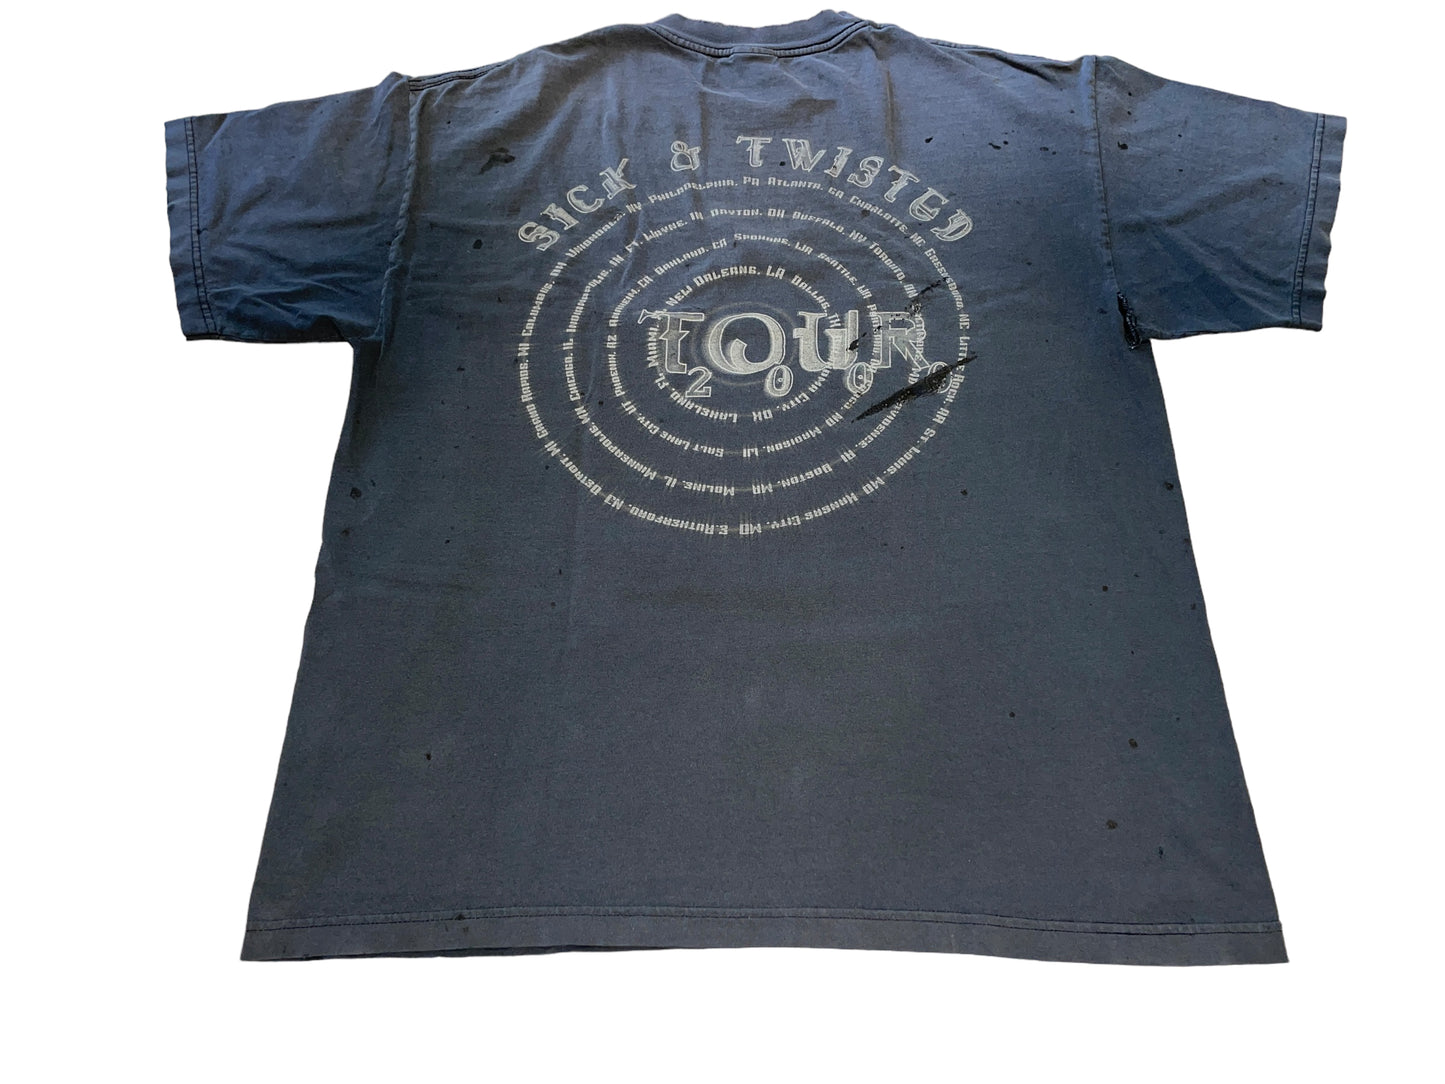 Vintage 2000 Korn T-Shirt